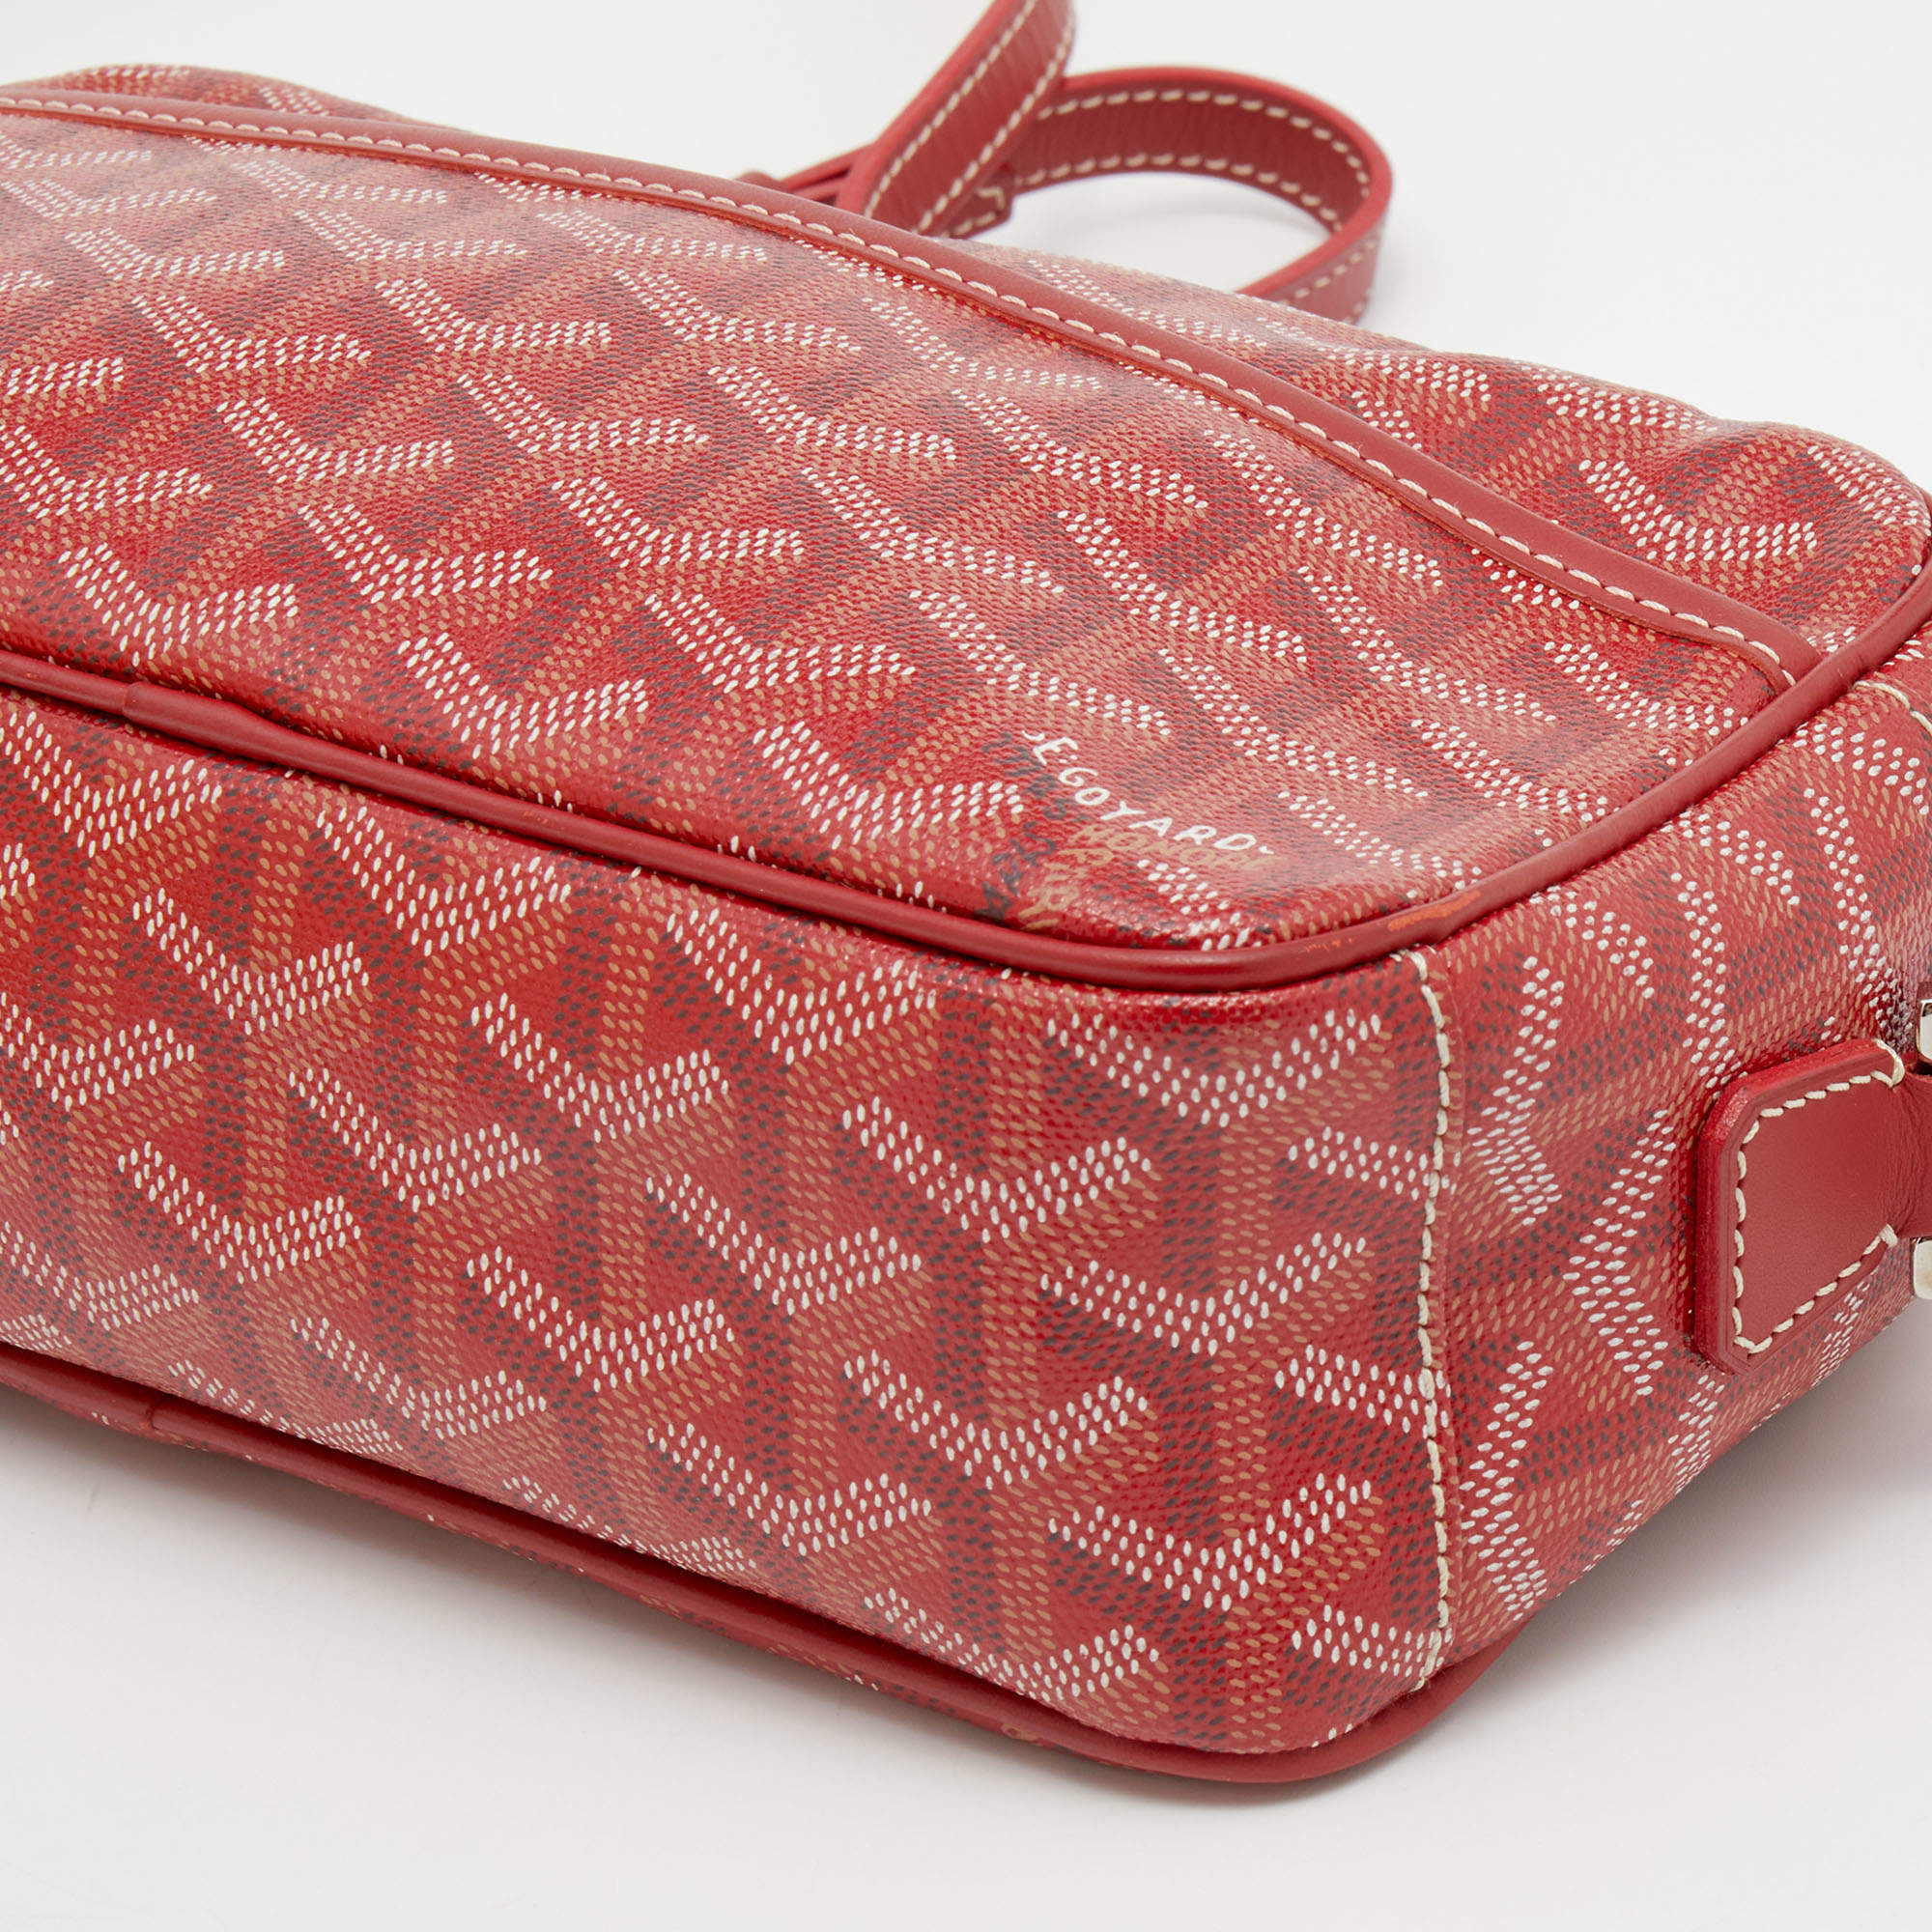 Goyard Sac Cap Vert Shoulder Bag in Red 98381